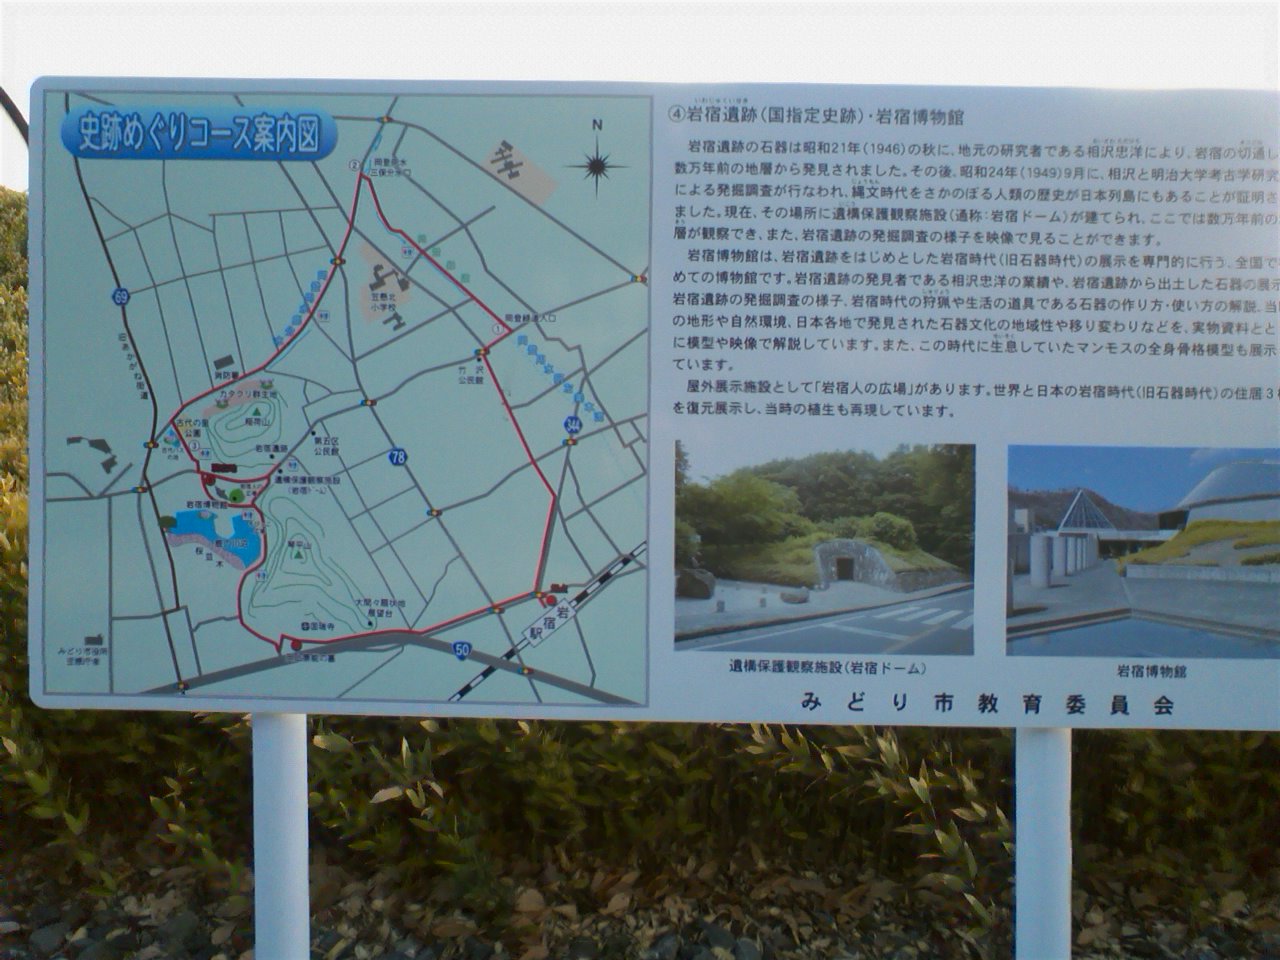 岩宿遺跡